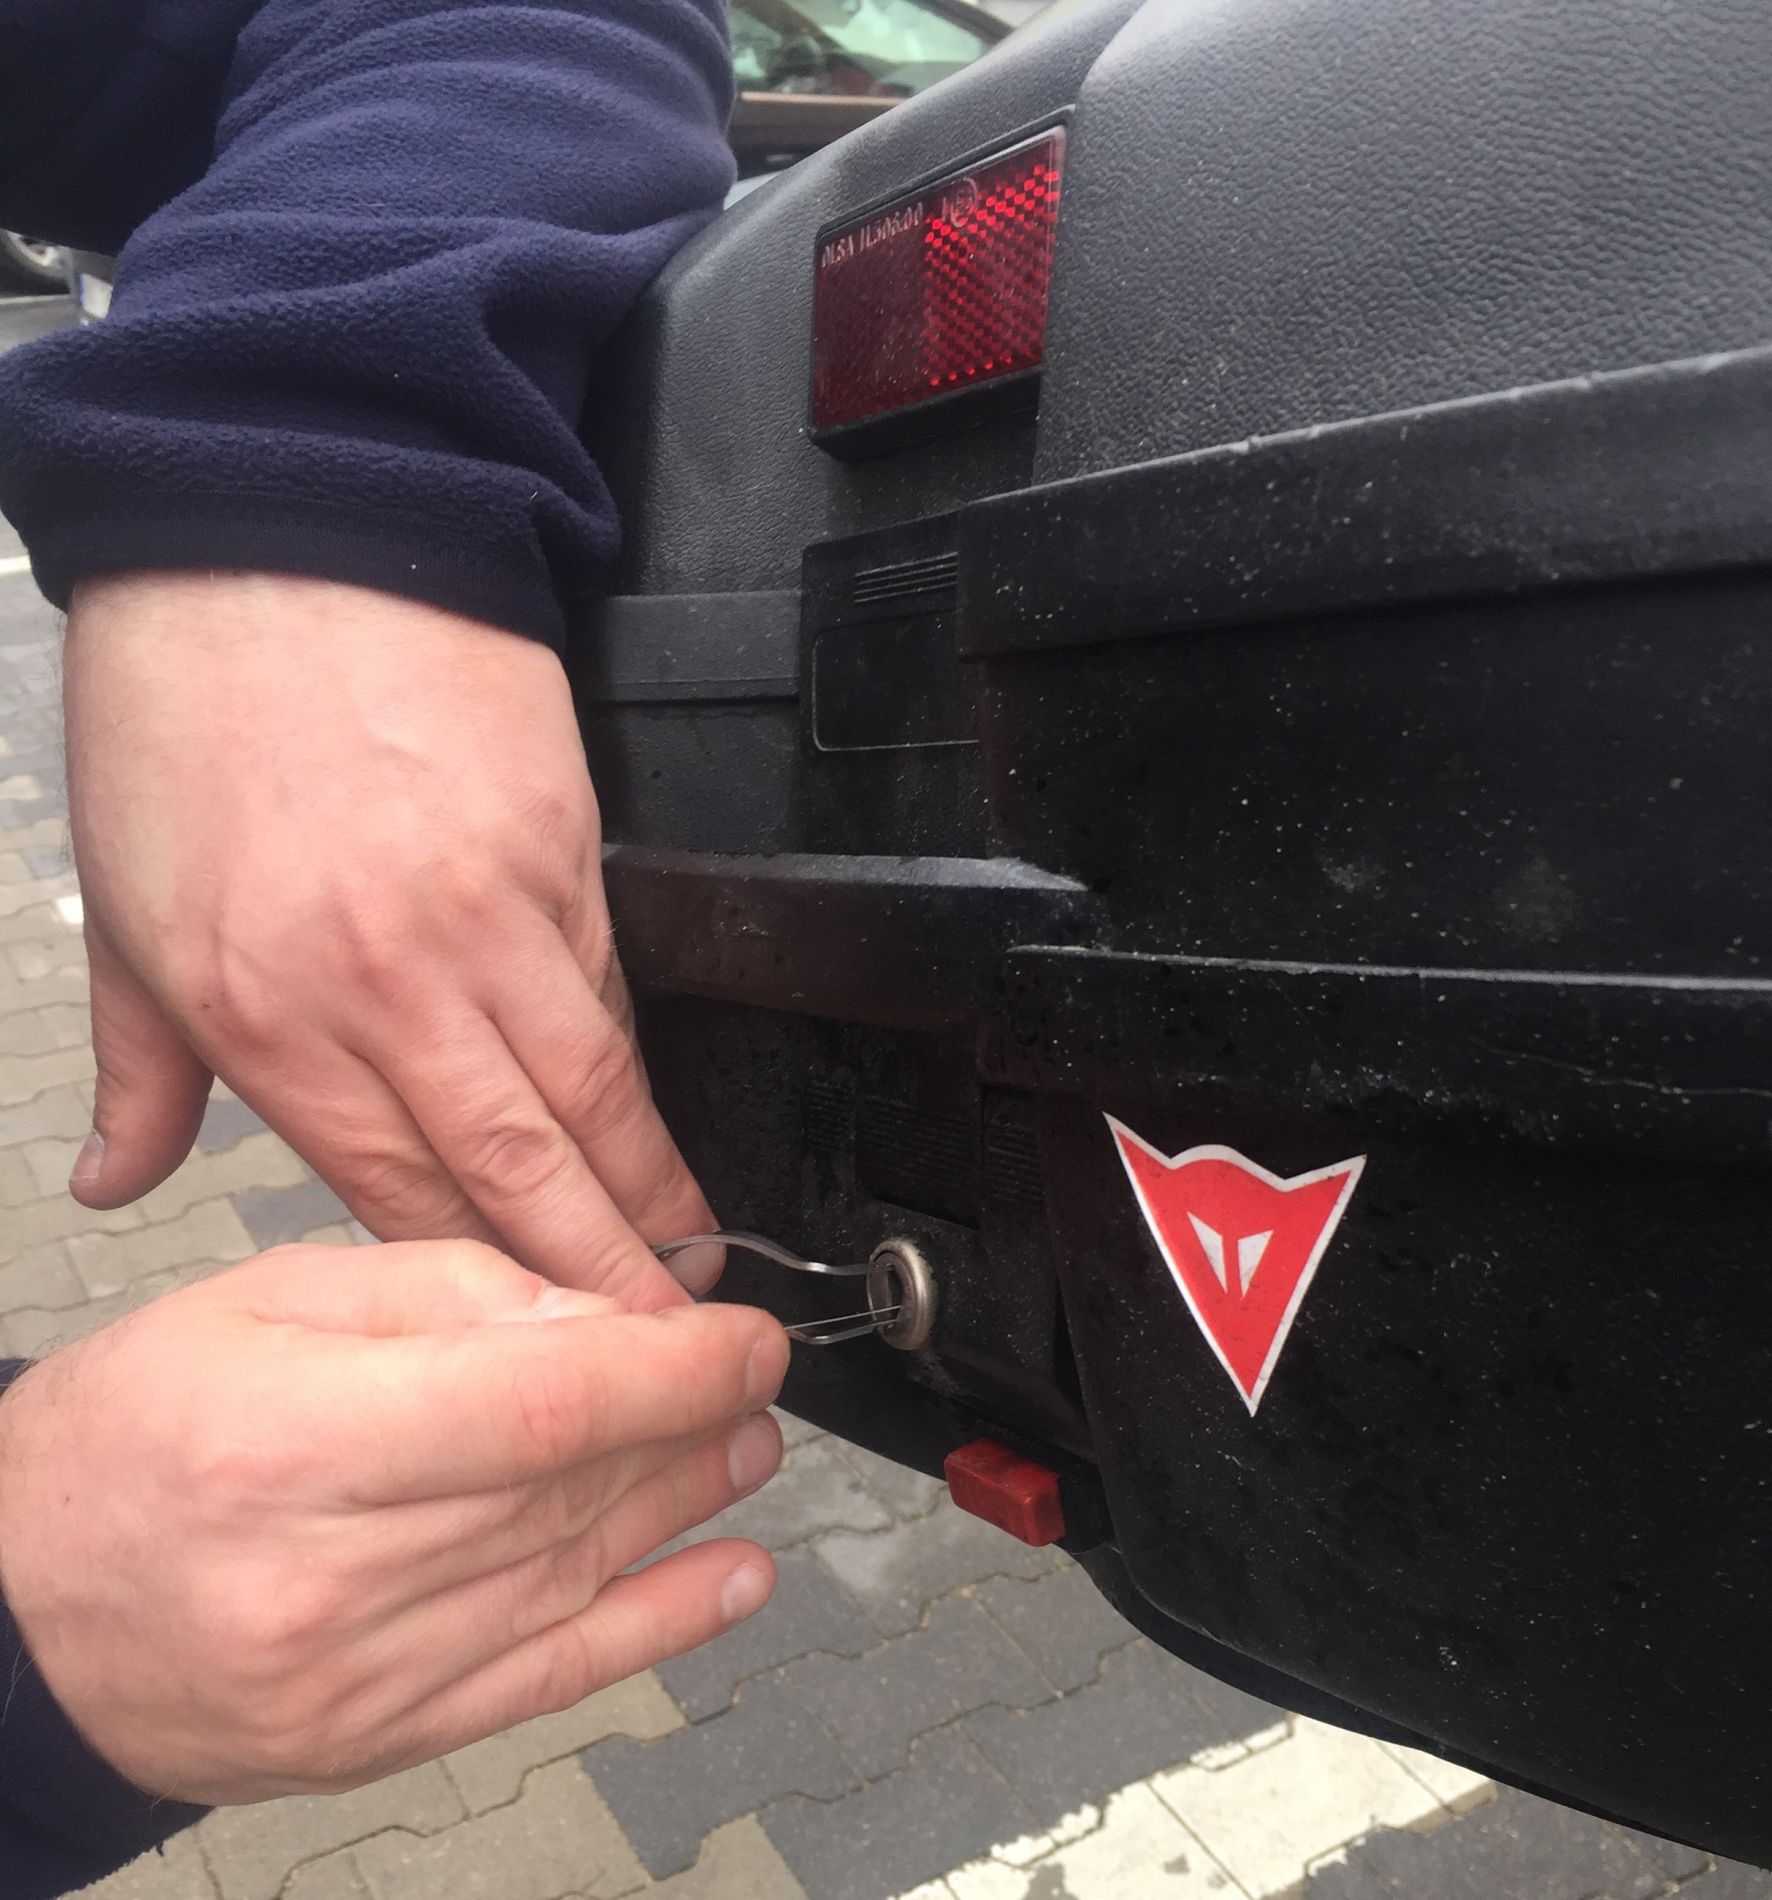 Dorobienie połamanego klucza do kufra motocykla Yamaha Tracer.